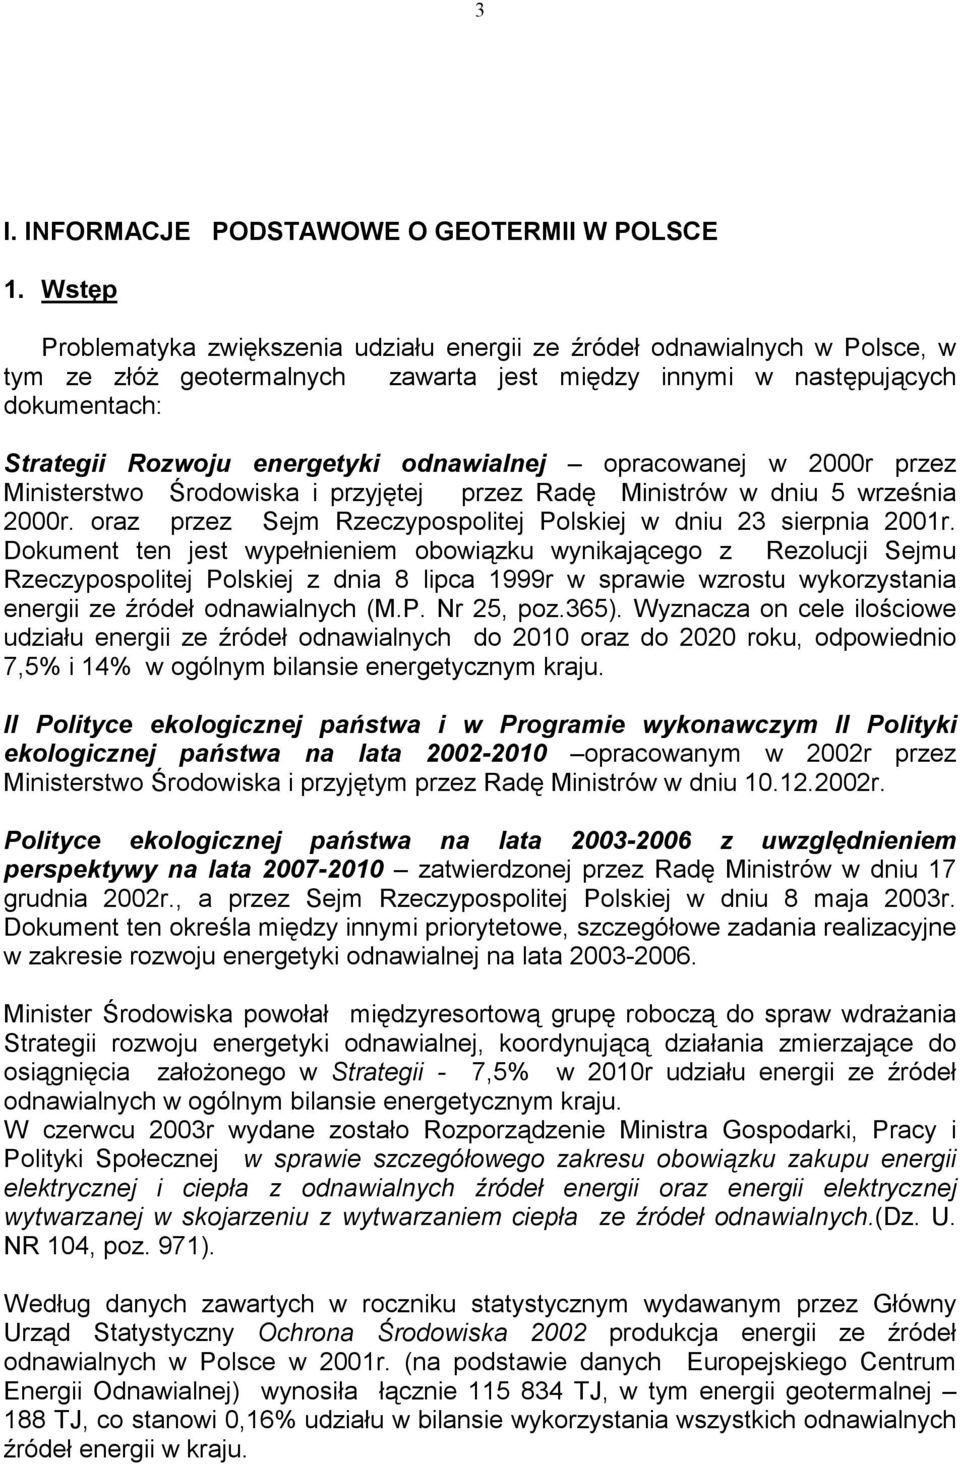 odnawialnej opracowanej w 2000r przez Ministerstwo Środowiska i przyjętej przez Radę Ministrów w dniu 5 września 2000r. oraz przez Sejm Rzeczypospolitej Polskiej w dniu 23 sierpnia 2001r.